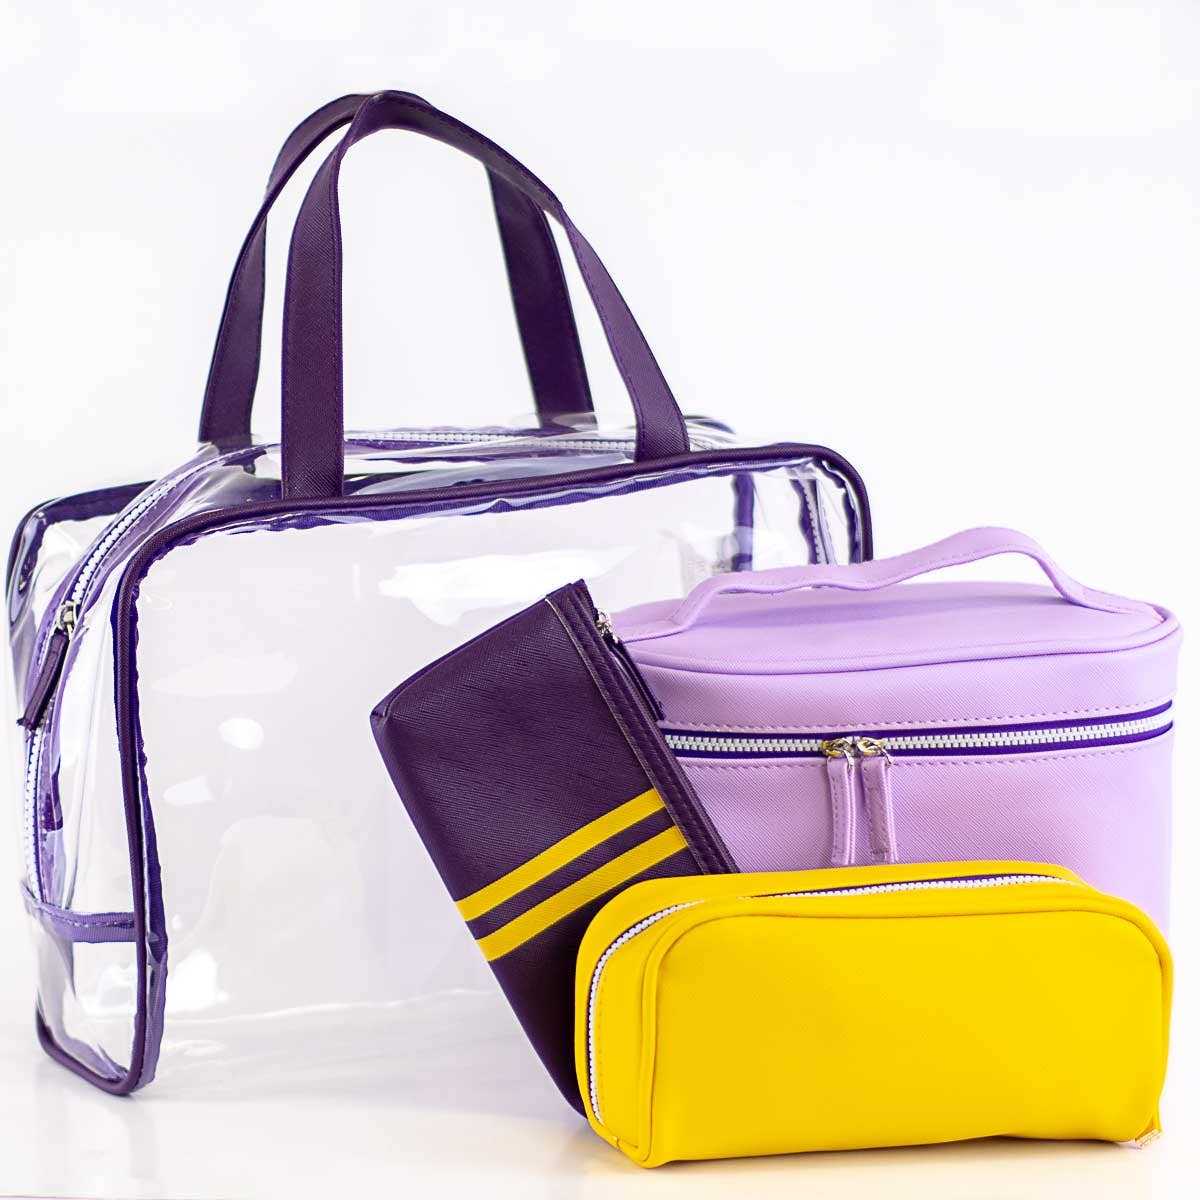 Livie Travel Gift Set   Purple/Yellow   12x8x4.5